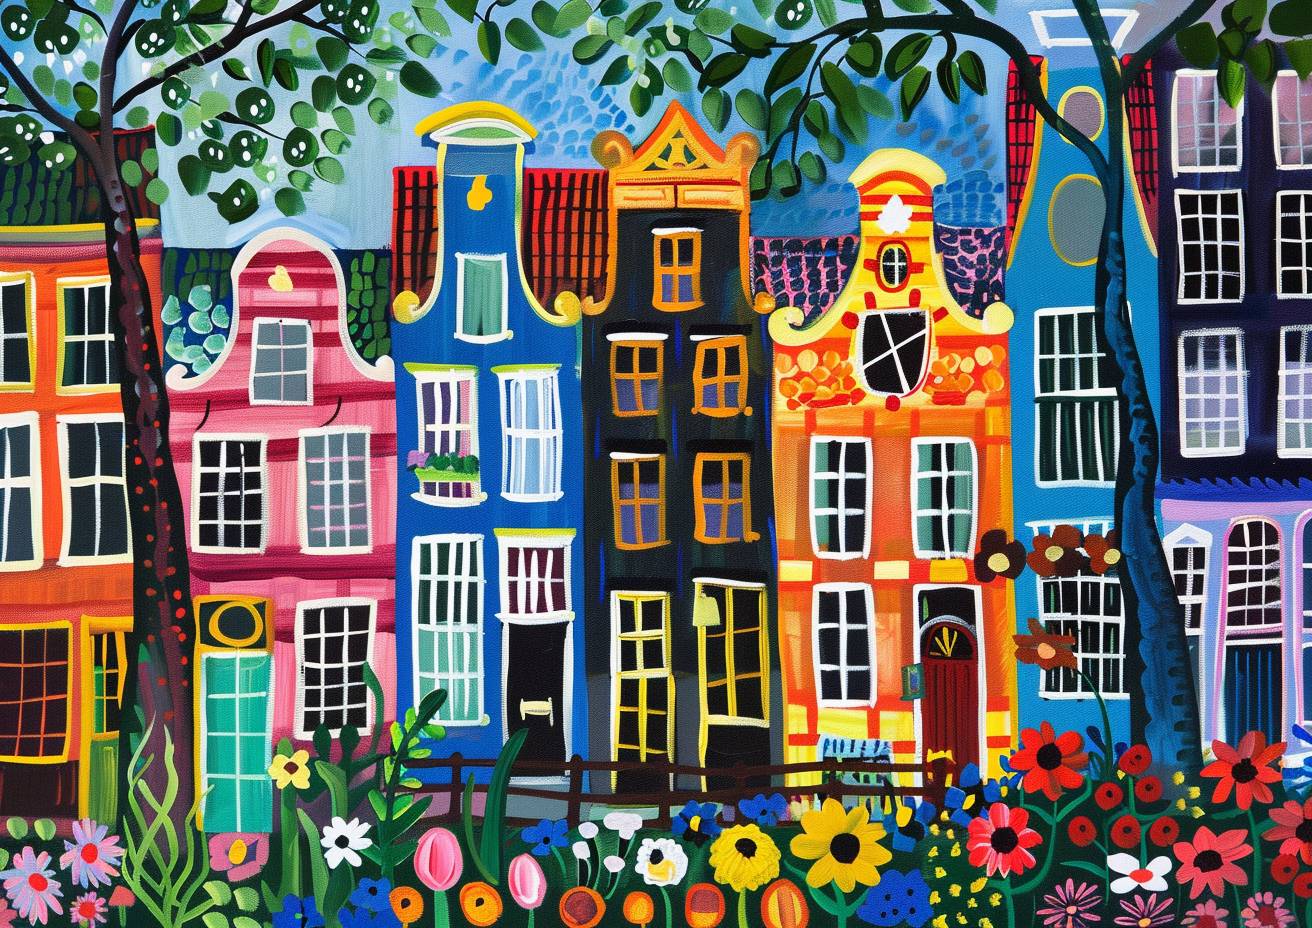 アムステルダム、カラフルな町屋と花々が並ぶ魅力的な通り、夏のイングランド、一番ユニークで素朴な芸術、ソフィー・ブラックオールやモード・ルイス、シャガールによる驚くべき絵画、素晴らしい筆づかい、鮮明さ、高品質、傑作、ハイクオリティ、